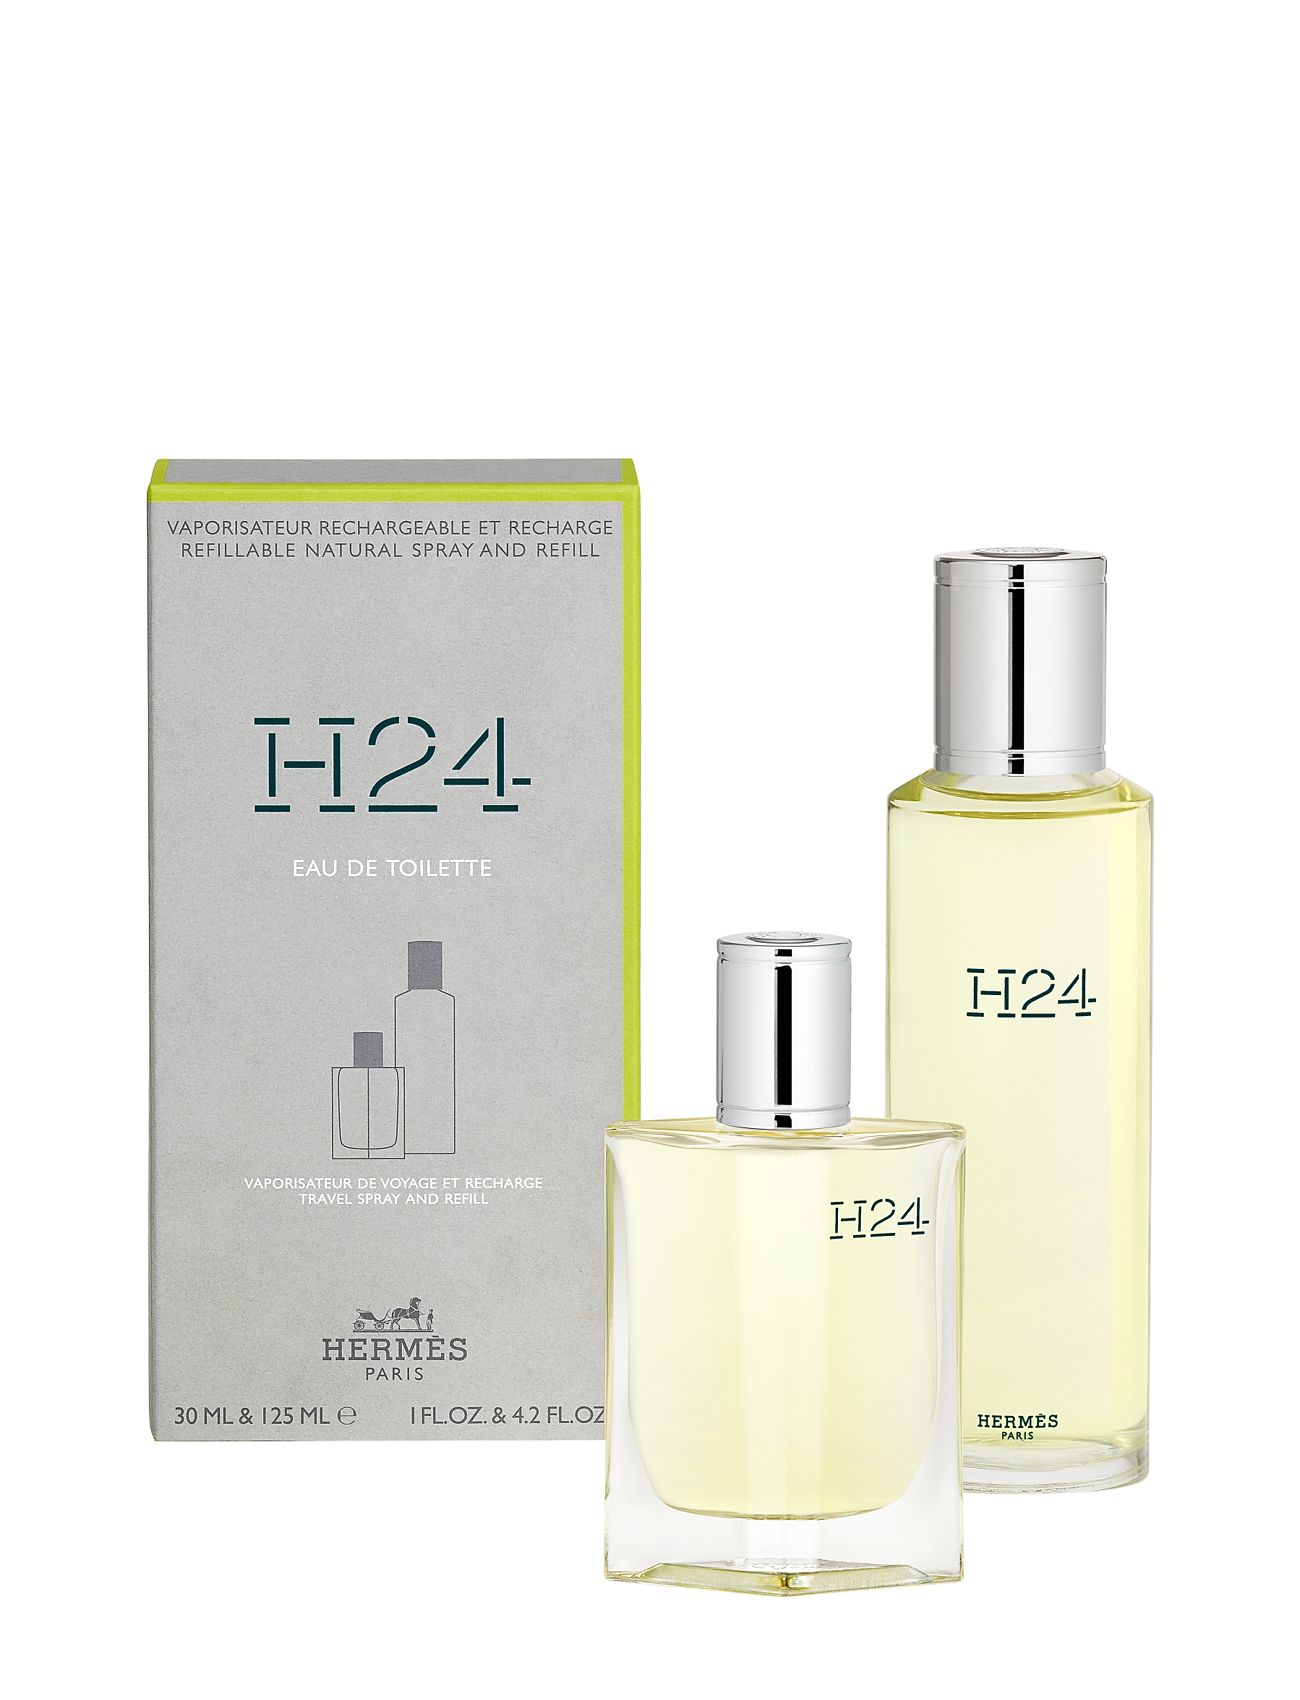 HERMÈS "H24 Edt Refill Spray + Bottle Parfume Eau De Parfum Nude HERMÈS"